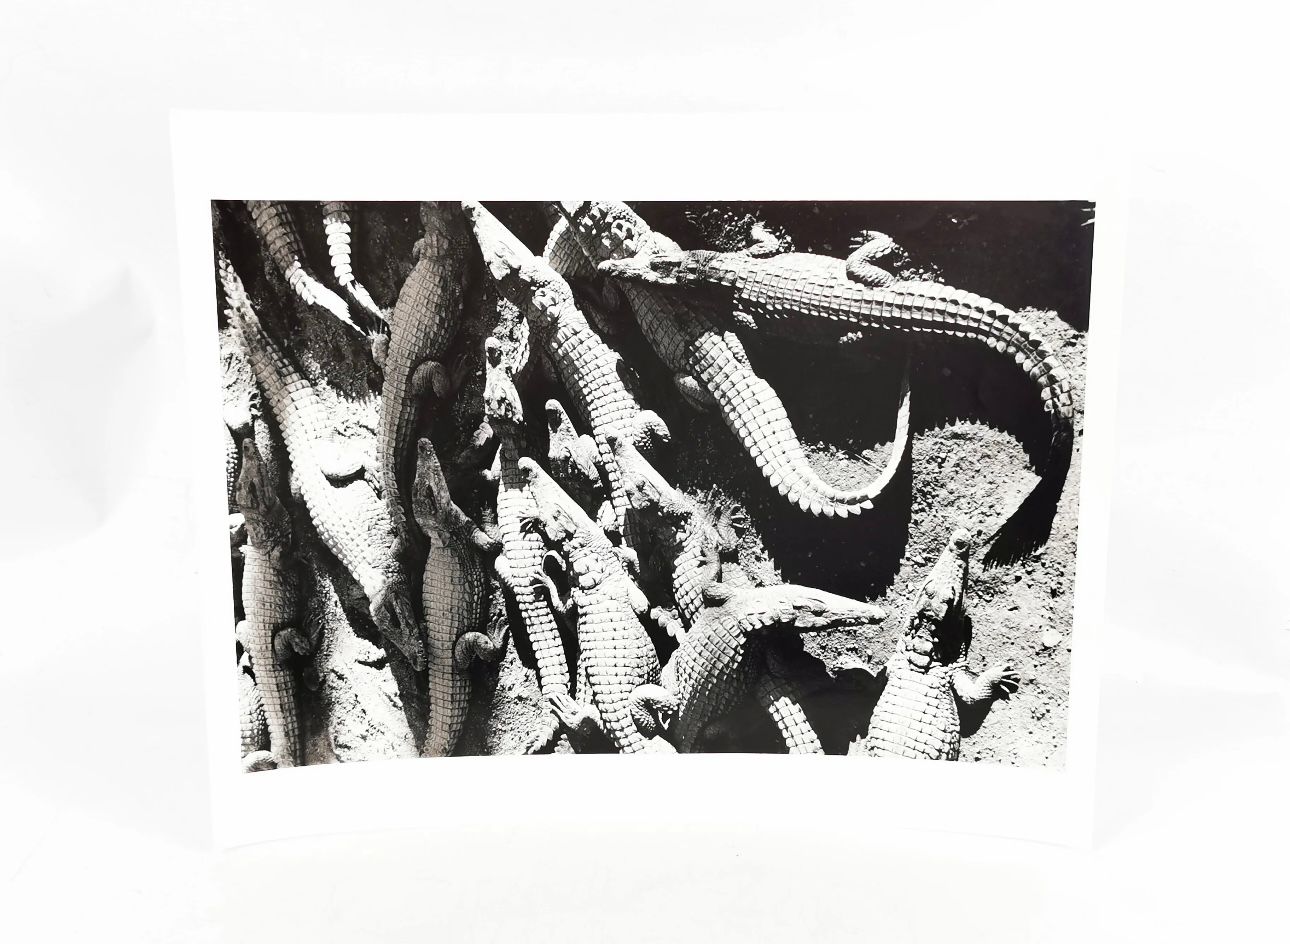 Null 吉安-保罗-巴比里（生于1938年）。鳄鱼。马达加斯加。黑白摄影作品，50 x 40厘米。从艺术家那里获得。